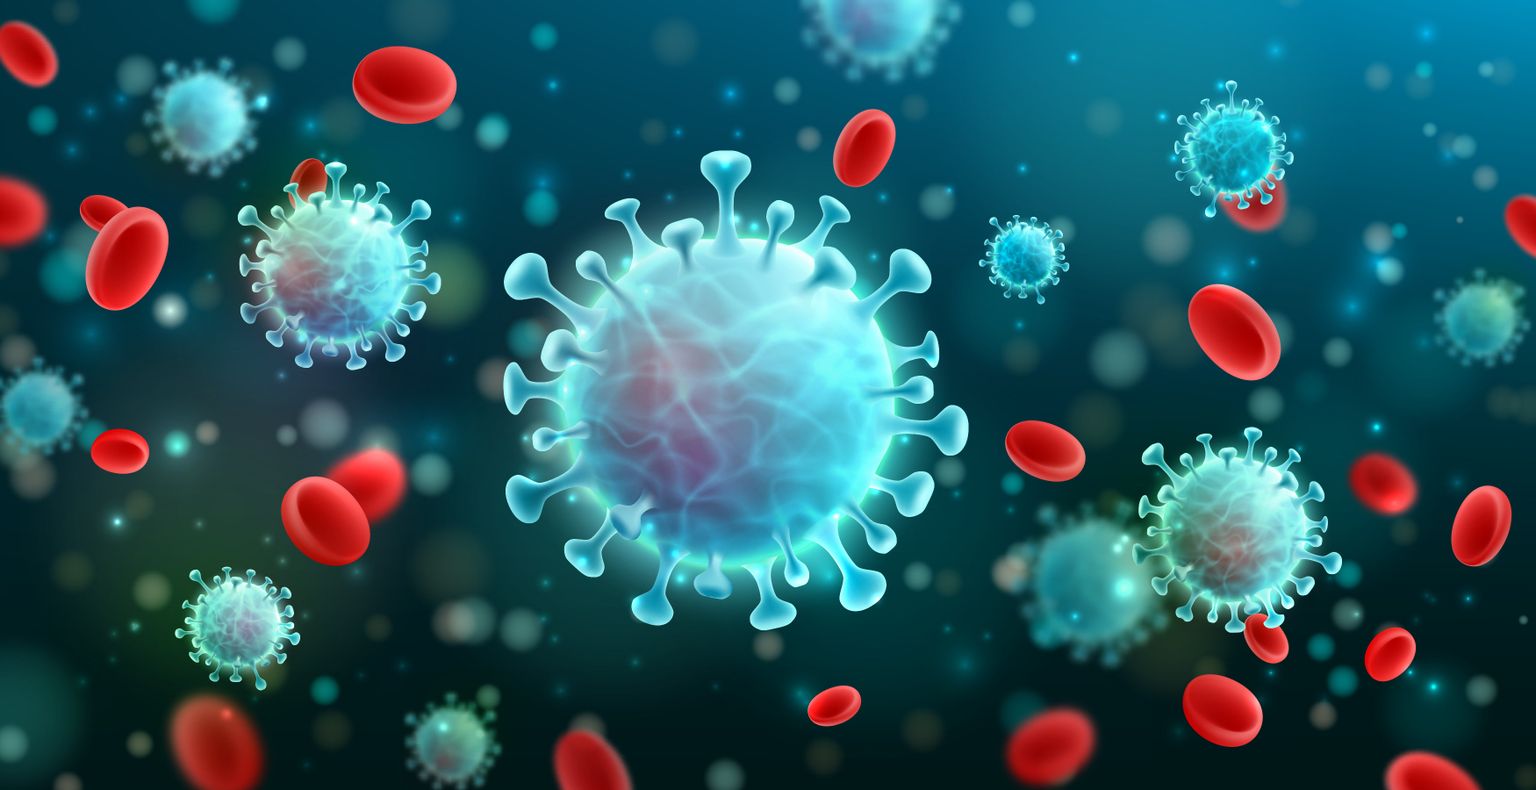 Illustrazione vettoriale di coronavirus 2019-nCoV e sfondo del virus con cellule della malattia e globuli rossi.COVID-19 focolaio del virus corona e concetto pandemico per la sanità medica